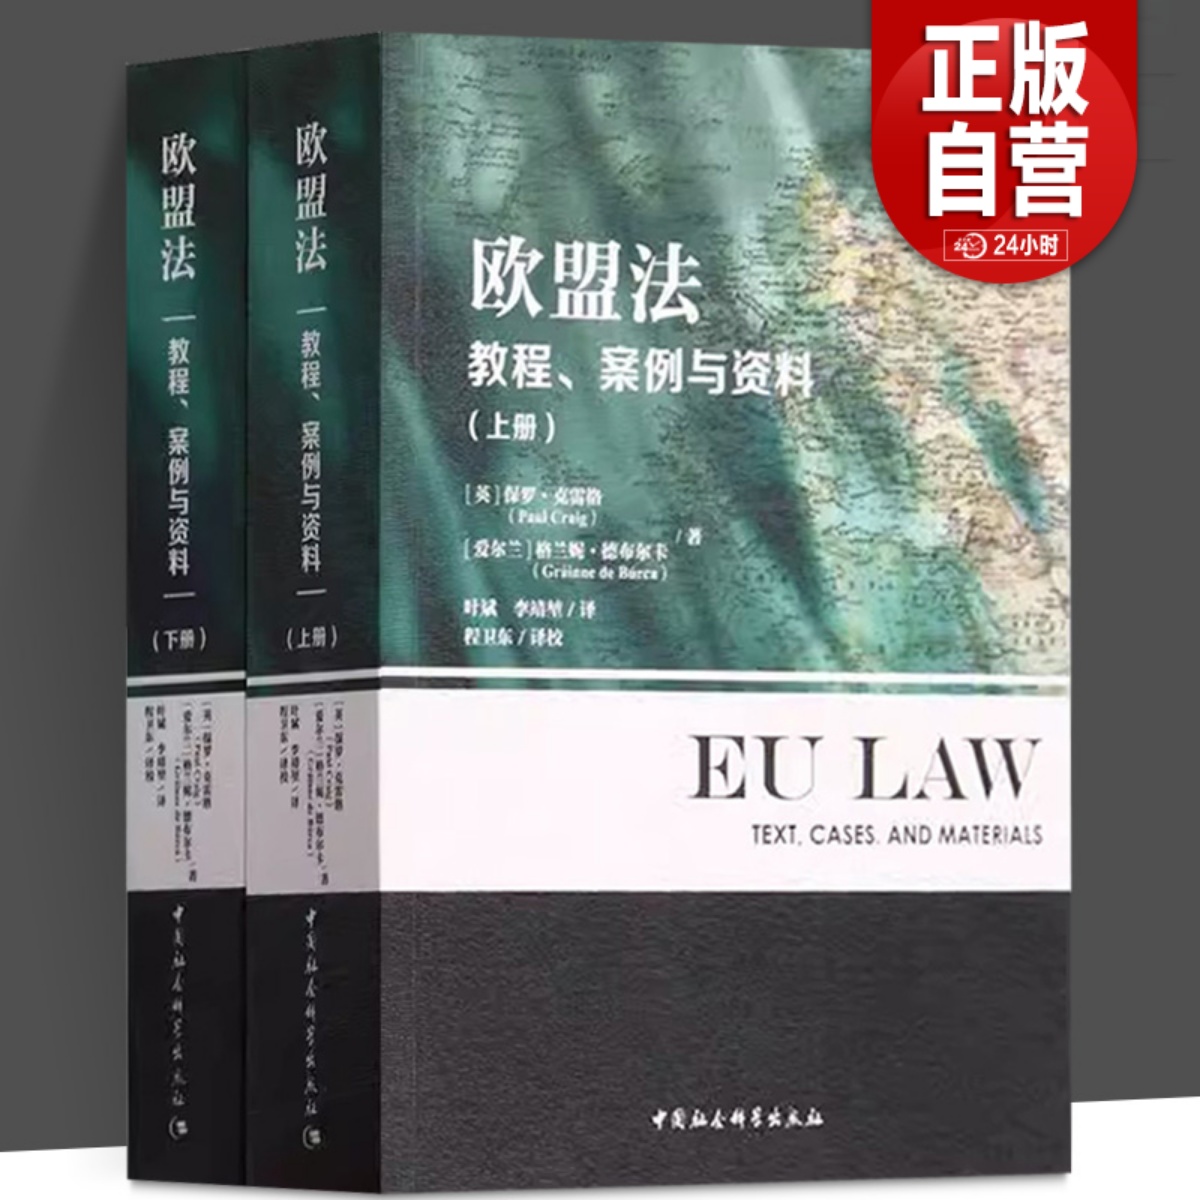 全2册 欧盟法(教程案例与资料上下册)法律书籍 法律案例 法律知识读物 保罗·克雷格 格兰妮·德布尔卡著  中国社会科学出版社